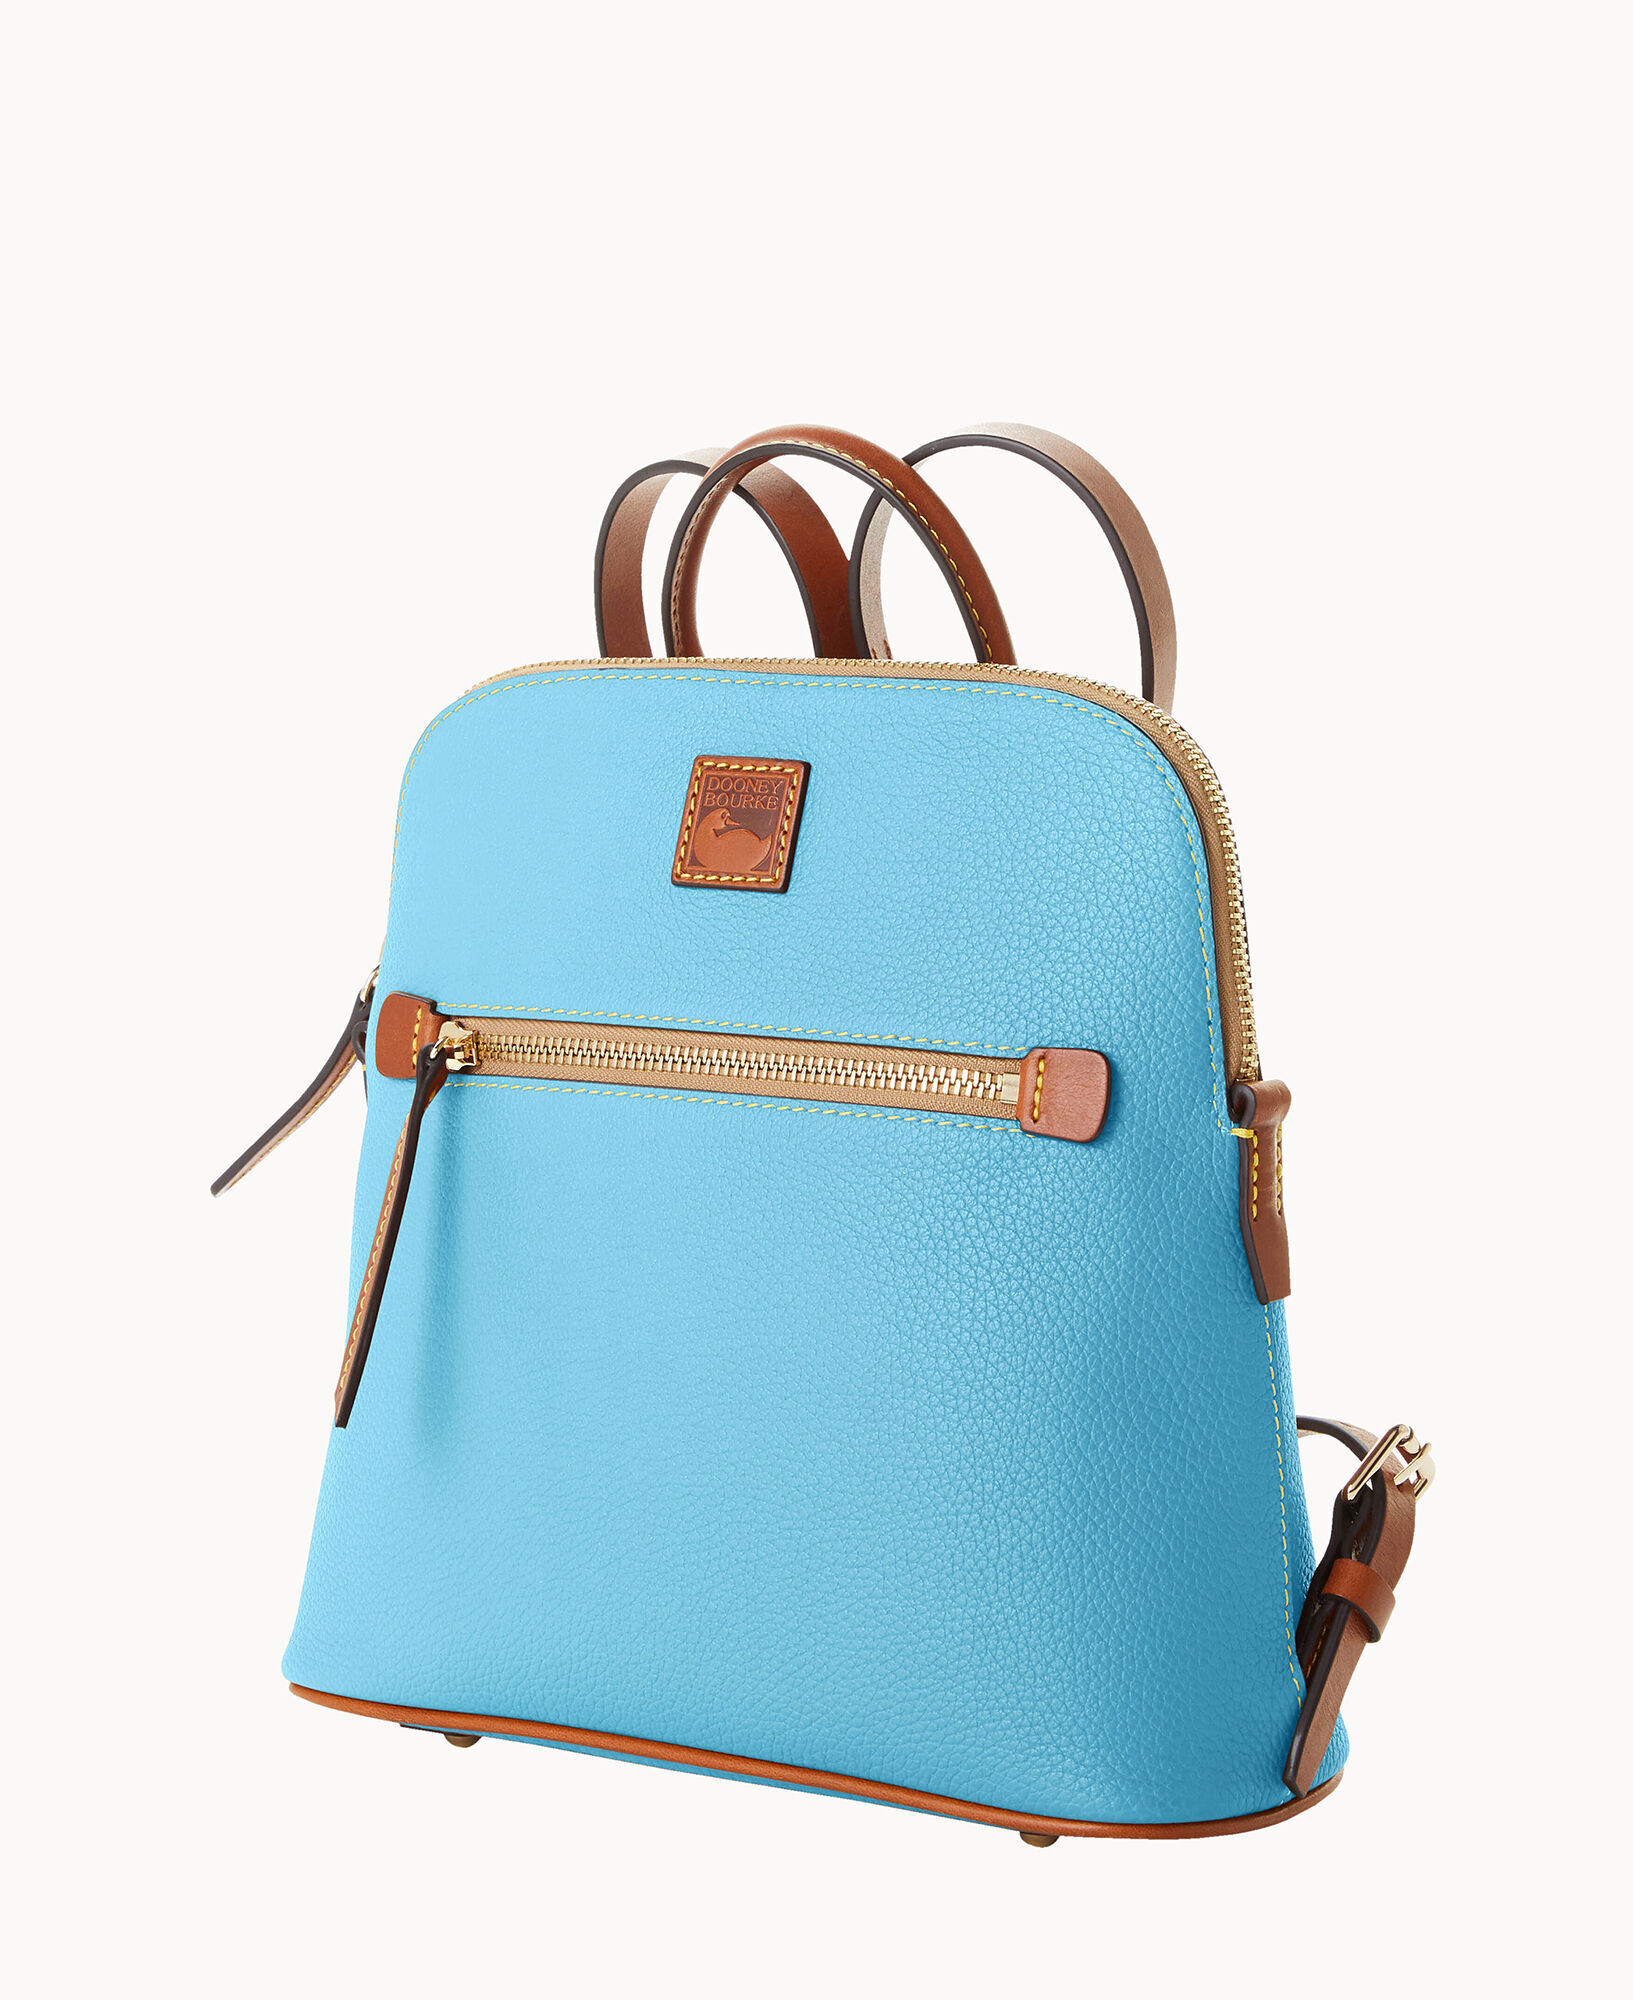  Dooney & Bourke Handbag, Pebble Grain Zip Pod Backpack -  Caramel